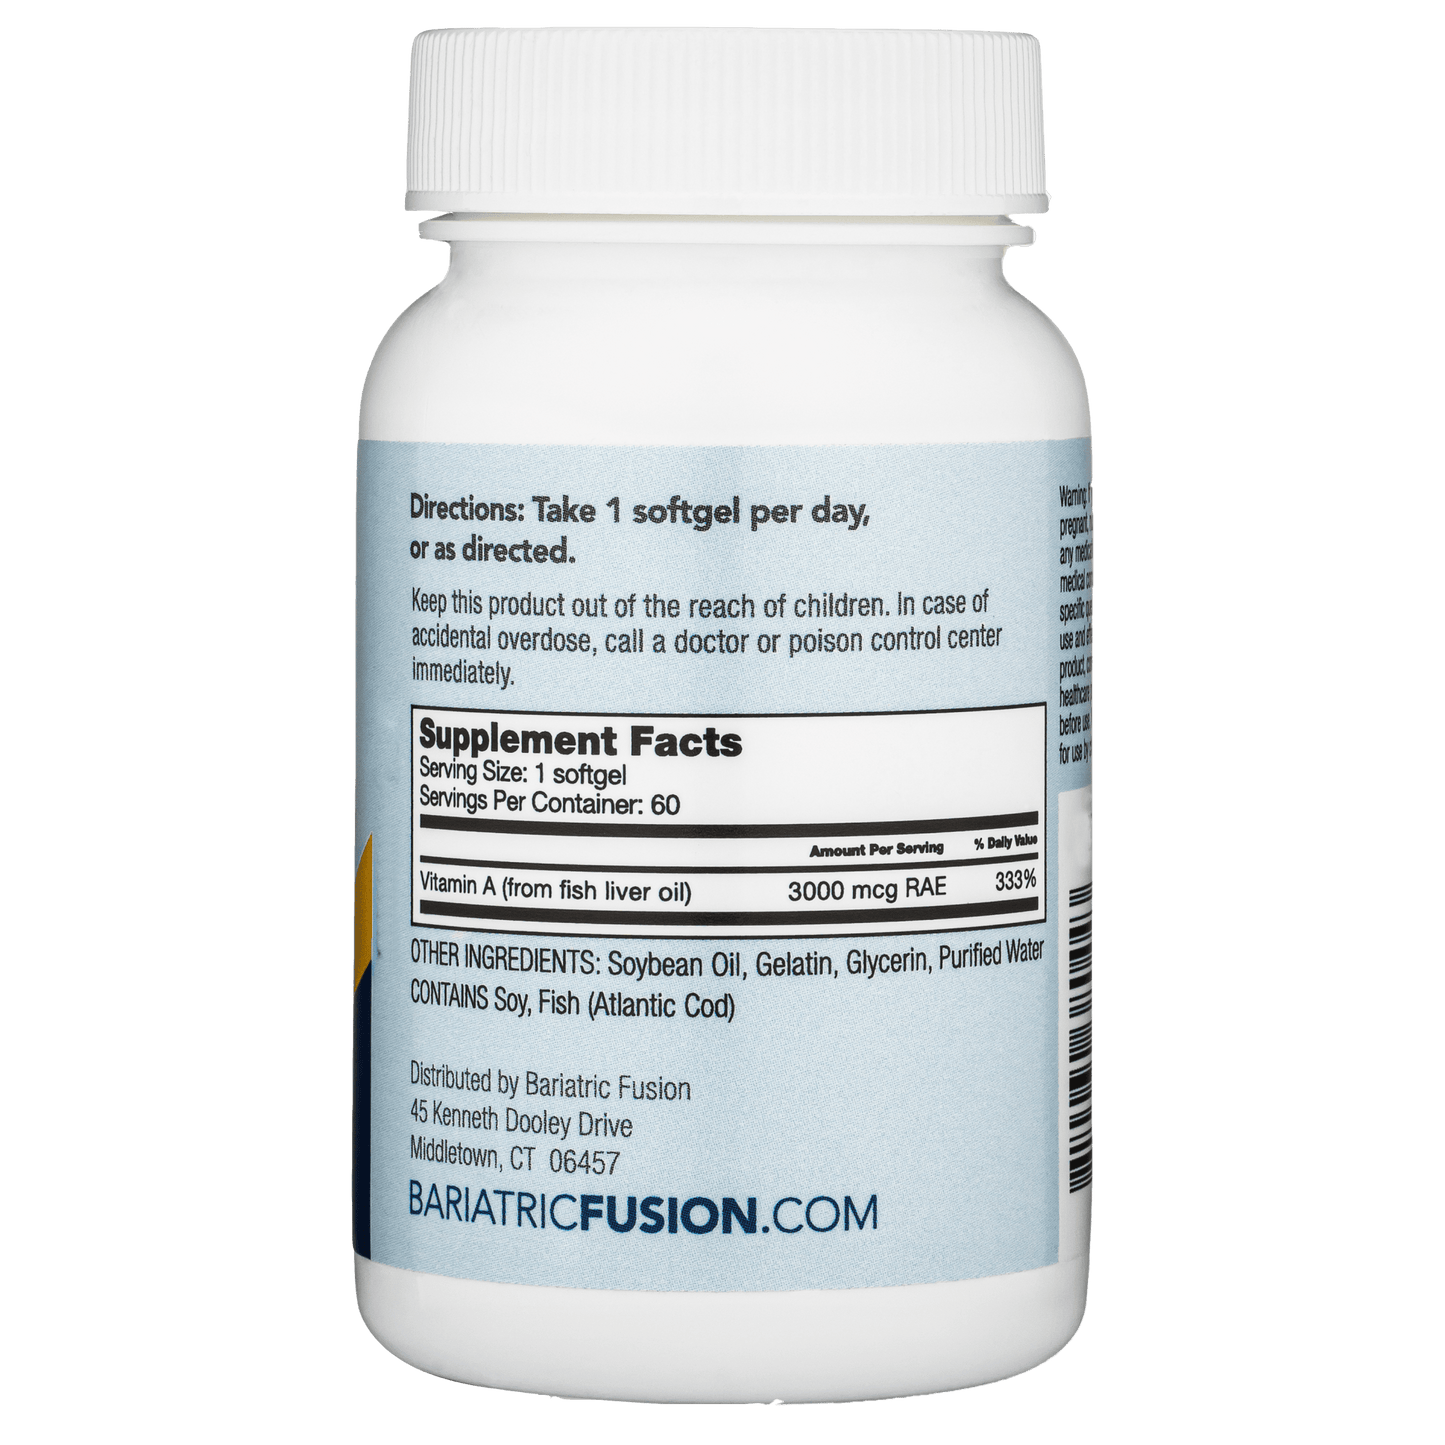 Vitamin A - Bariatric Fusion